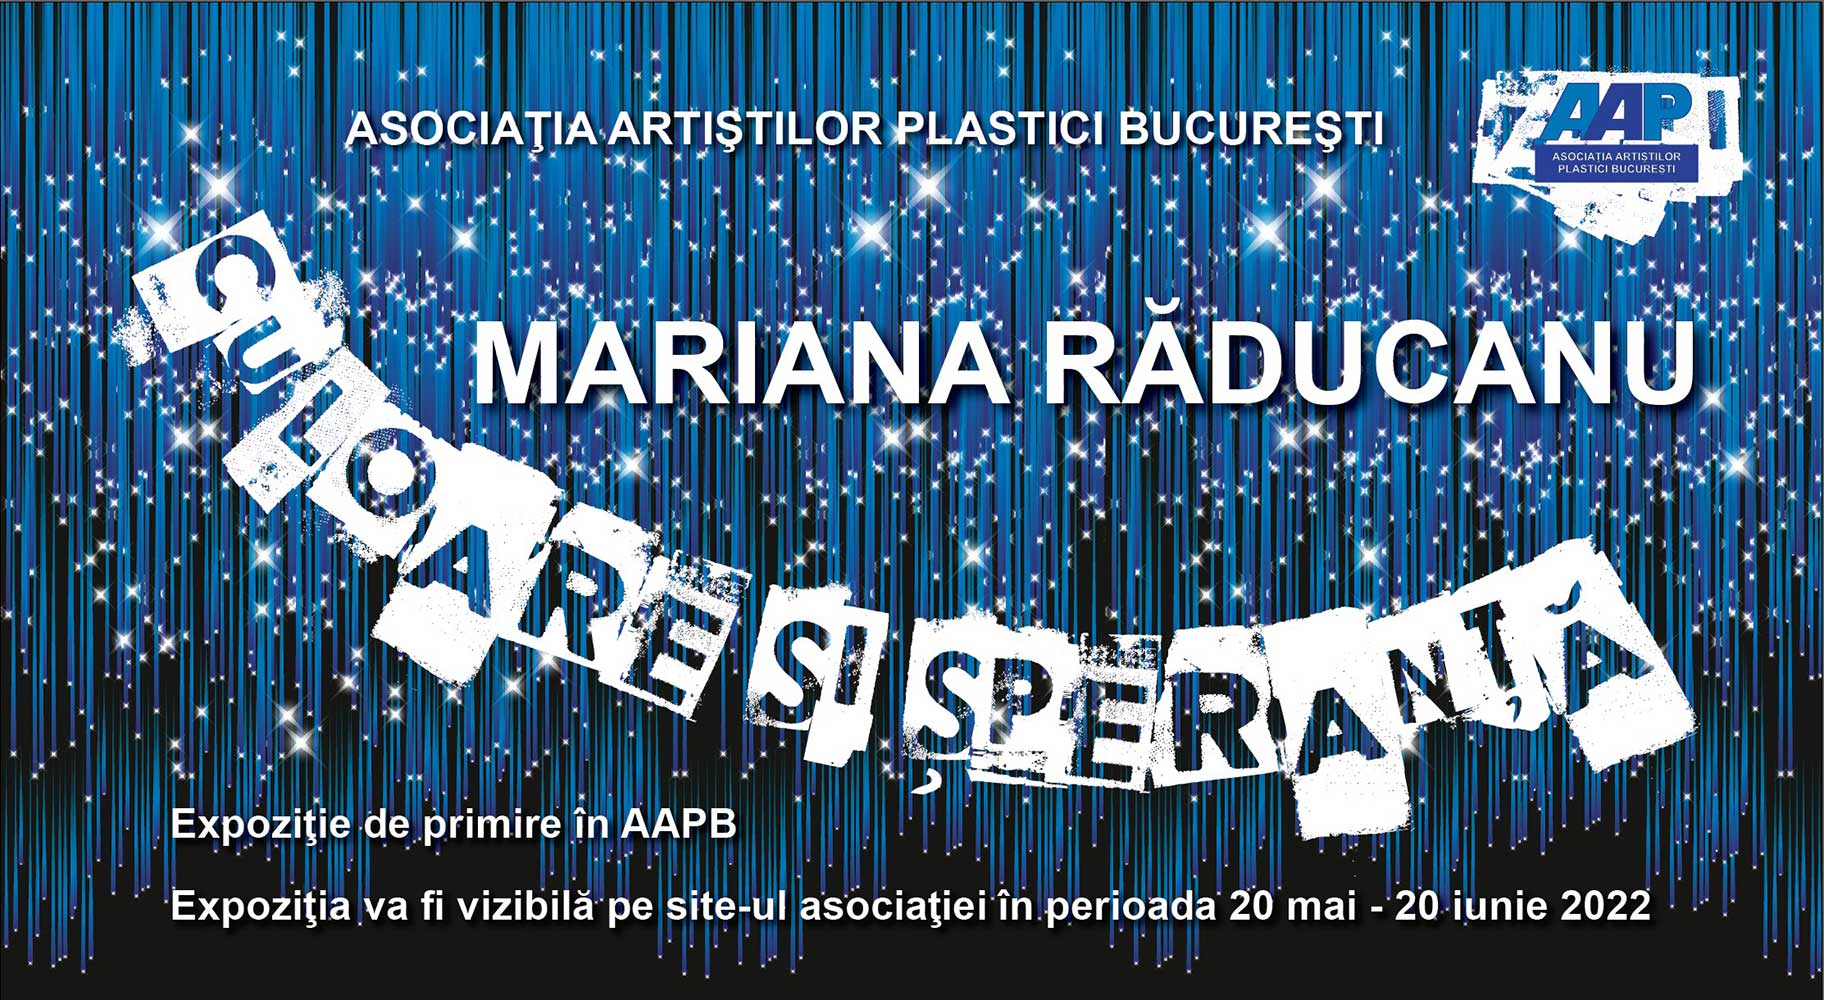 Mariana Raducanu „CULOARE SI SPERANTA” - expoziţie de primire în AAPB - (20 mai - 20 iunie 2022) - ONLINE